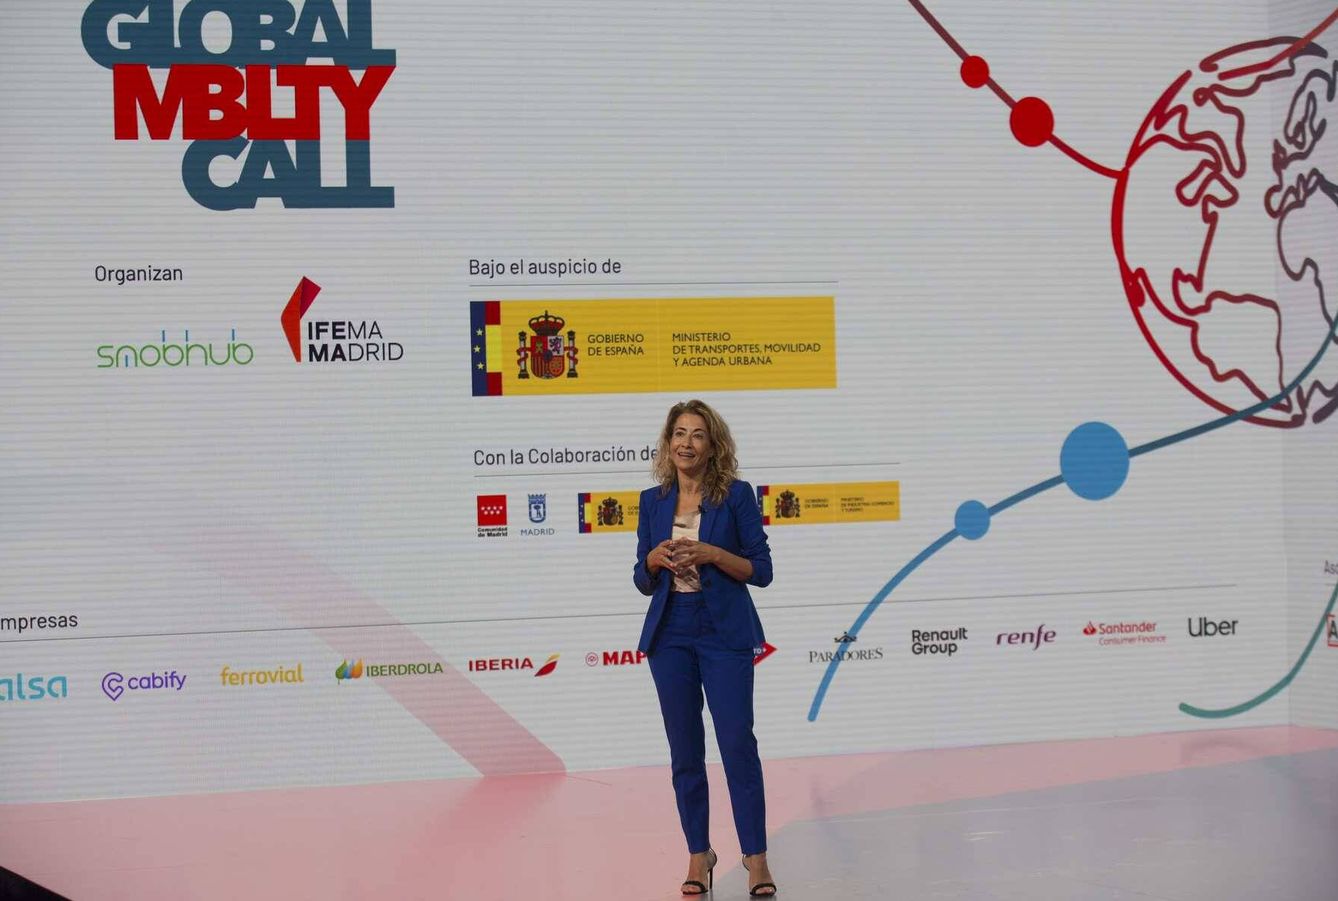 La presentación de Global Mobility Call fue la primera intervención de Raquel Sánchez como nueva ministra de Transportes.